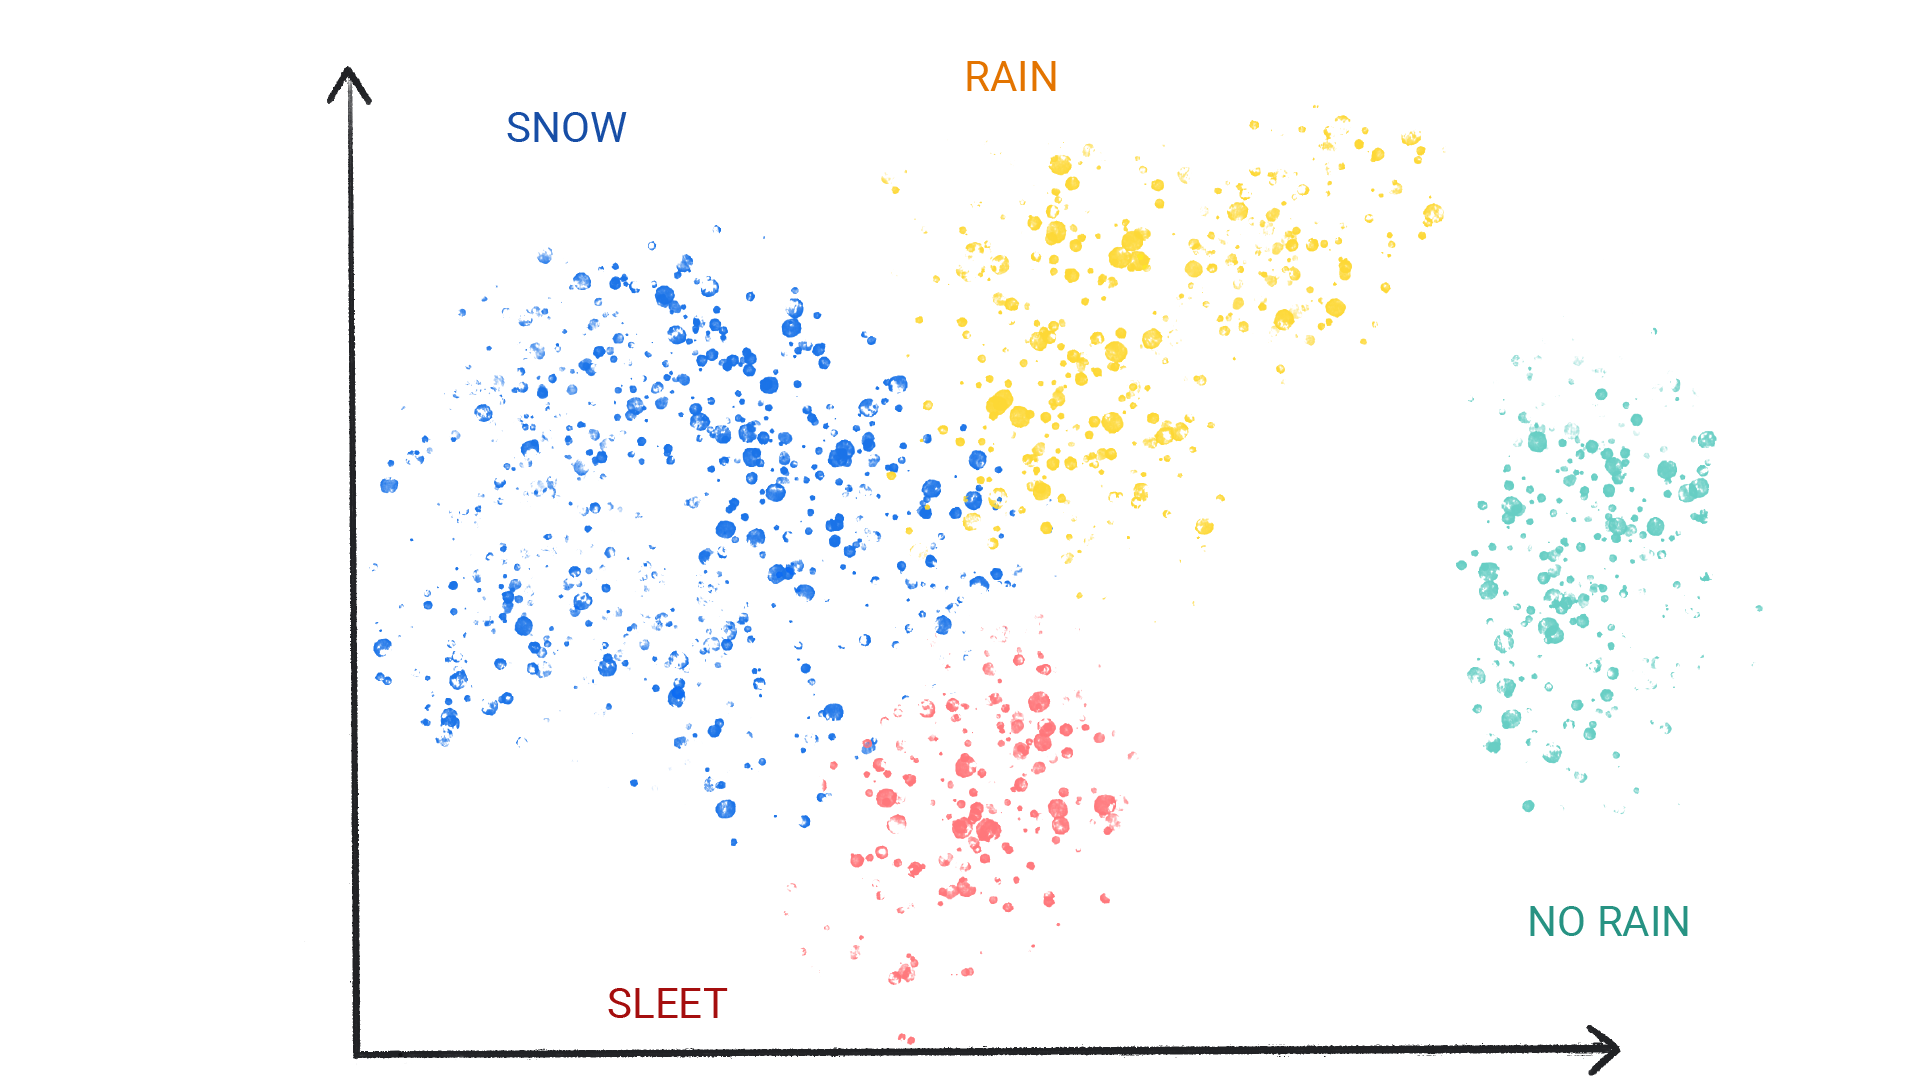 Kar, yağmur, dolu ve yağmur yok olarak etiketlenmiş kümelerdeki renkli noktaları gösteren resim.